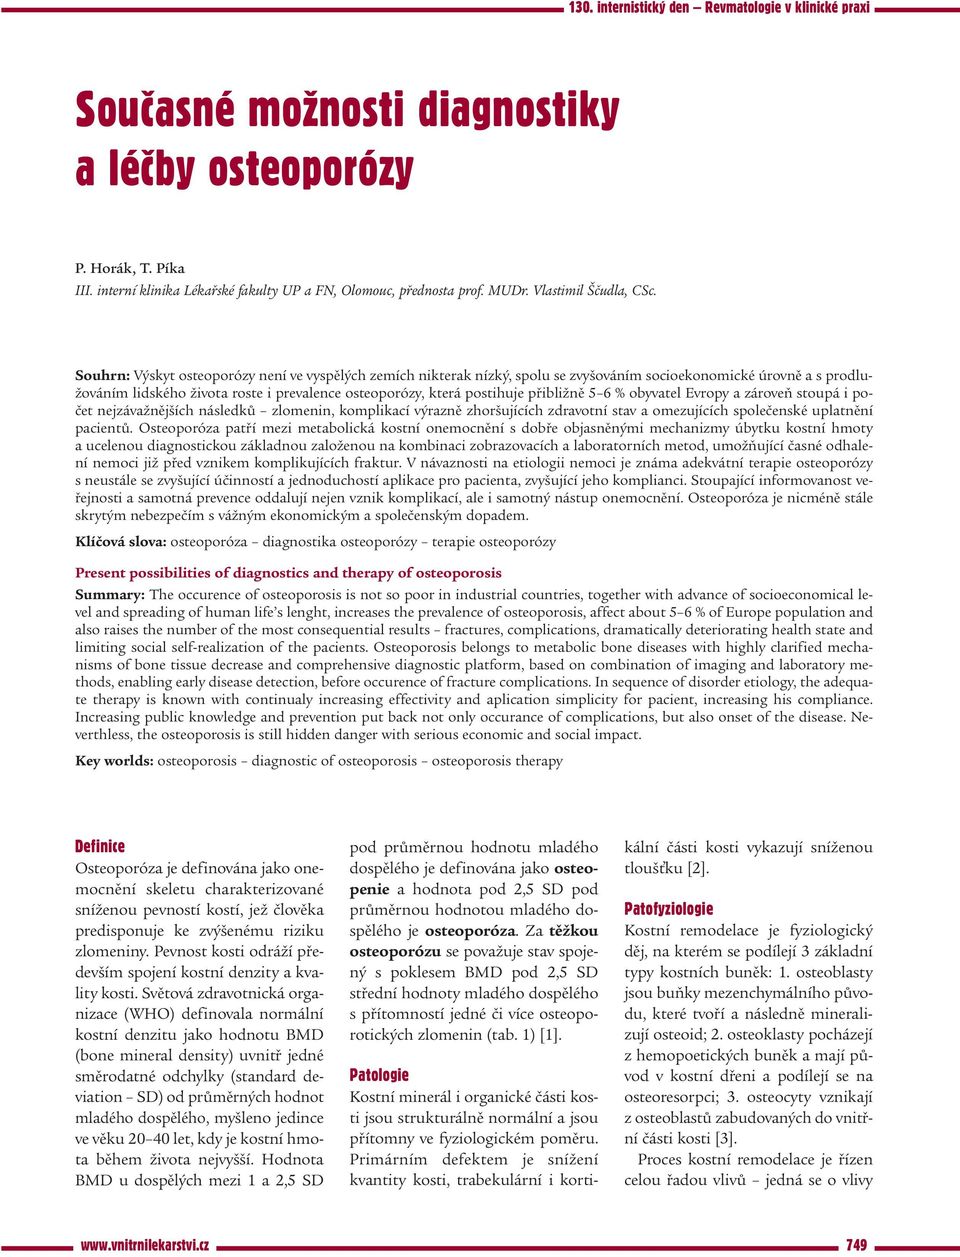 Souhrn: Výskyt osteoporózy není ve vyspělých zemích nikterak nízký, spolu se zvyšováním socioekonomické úrovně a s prodlužováním lidského života roste i prevalence osteoporózy, která postihuje